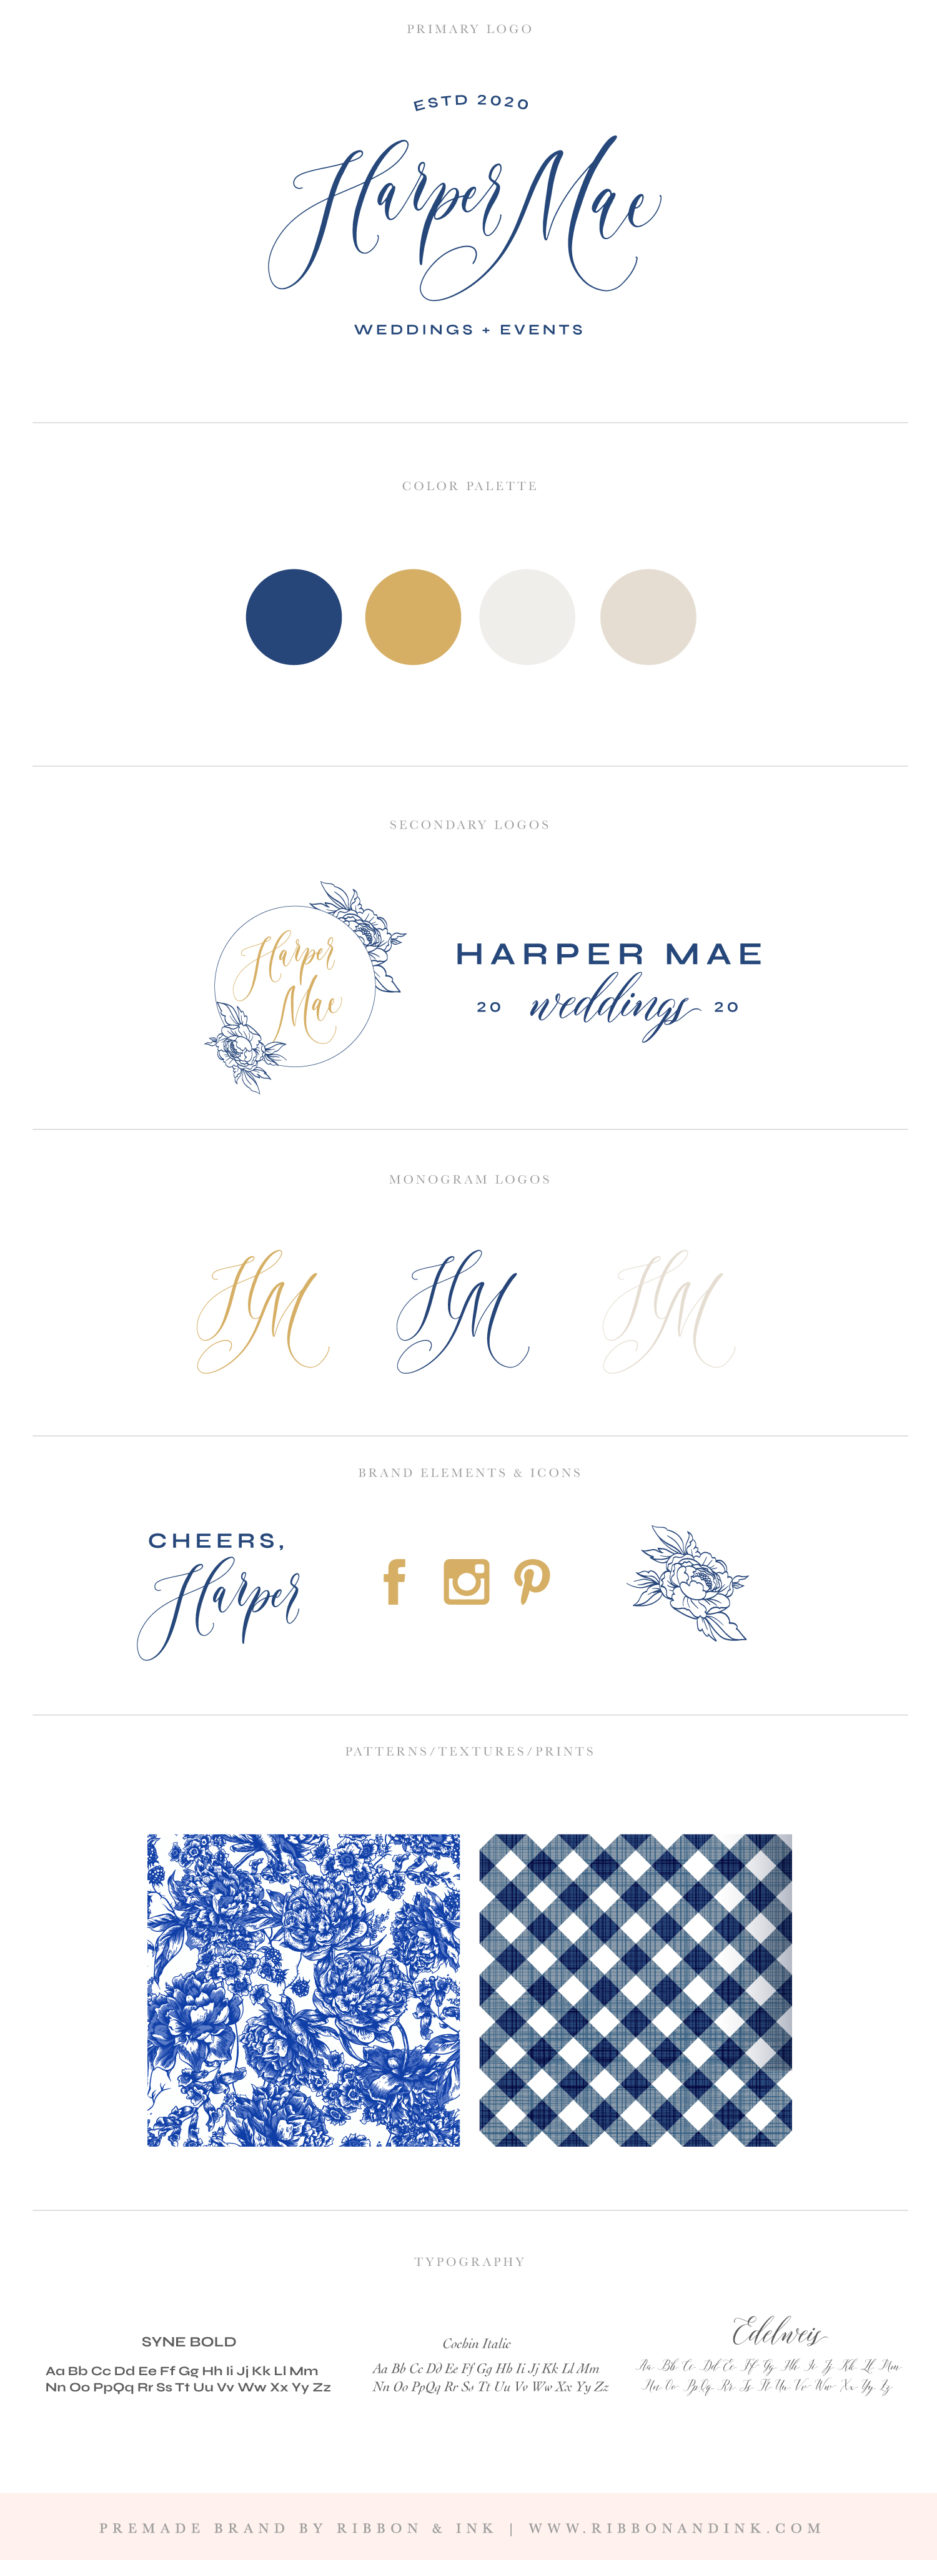 branding board / brand identity design / feminine logo / calligraphy logo / pretty logo / southern brand / blue / marigold / oklahoma wedding planner / custom branding for creative small businesses / branding for women